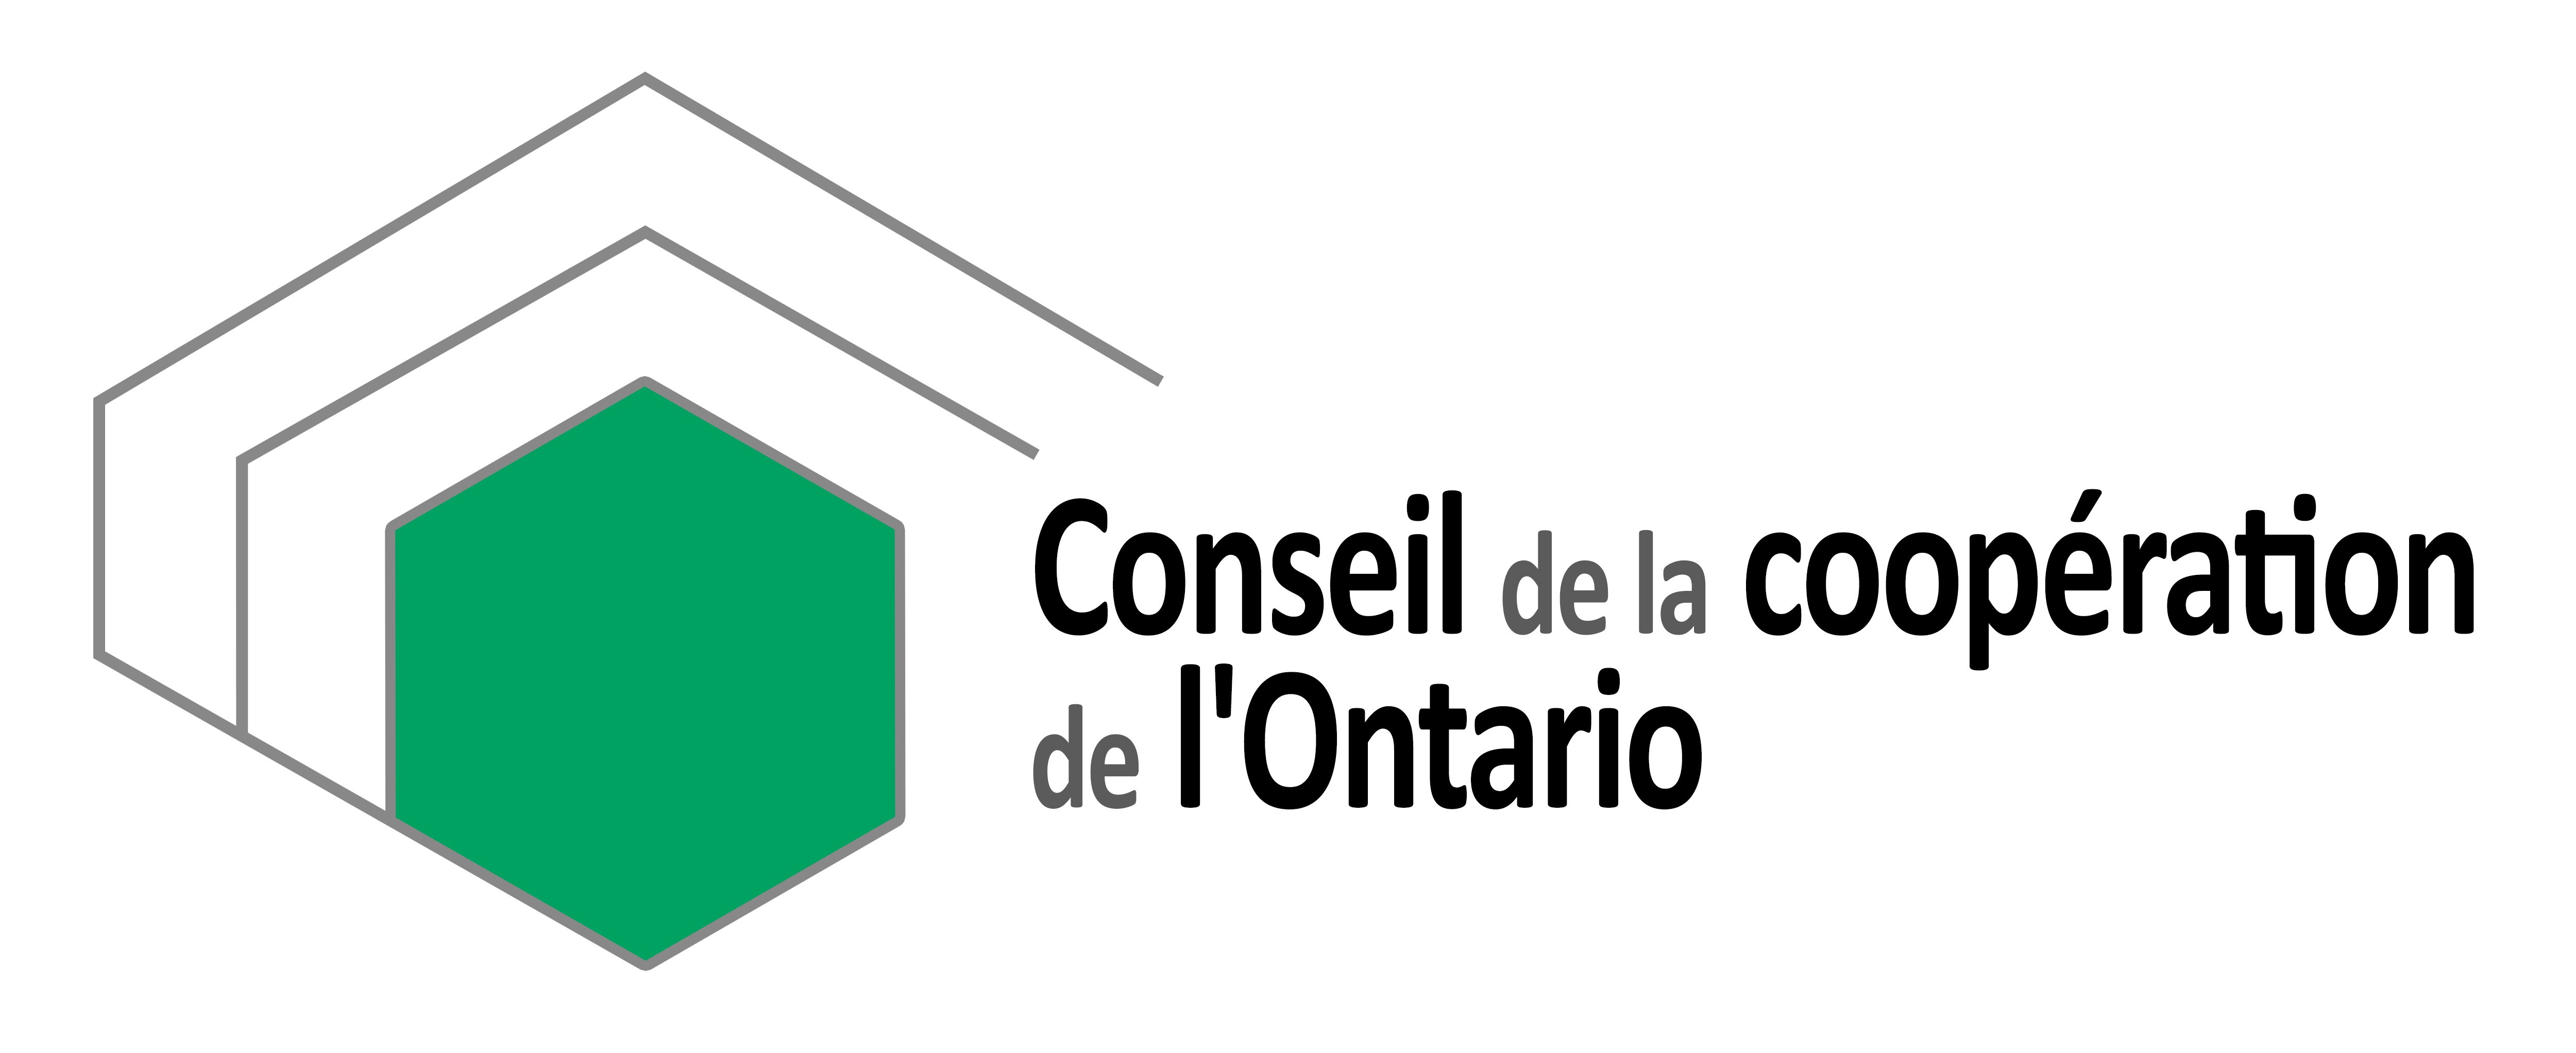 Le Conseil de la coopération de l'Ontario